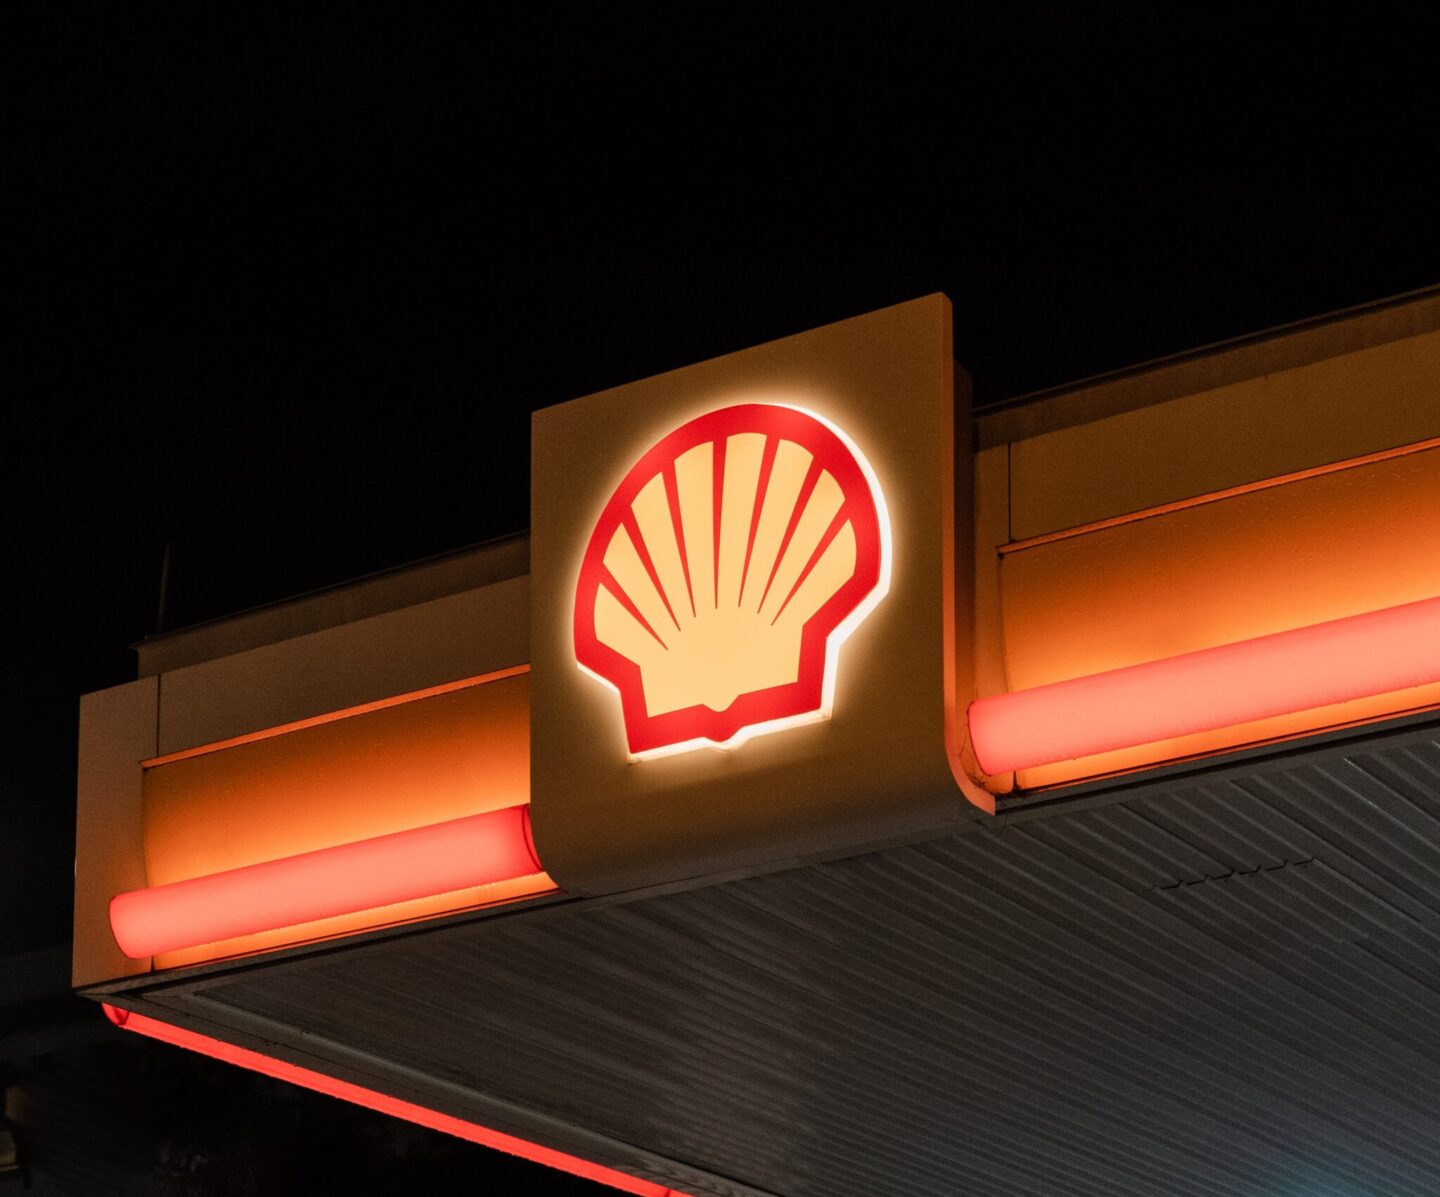 BP, Shell i Exxon Mobil zakończyły współpracę z rosyjskimi firmami. Niemcy niekoniecznie